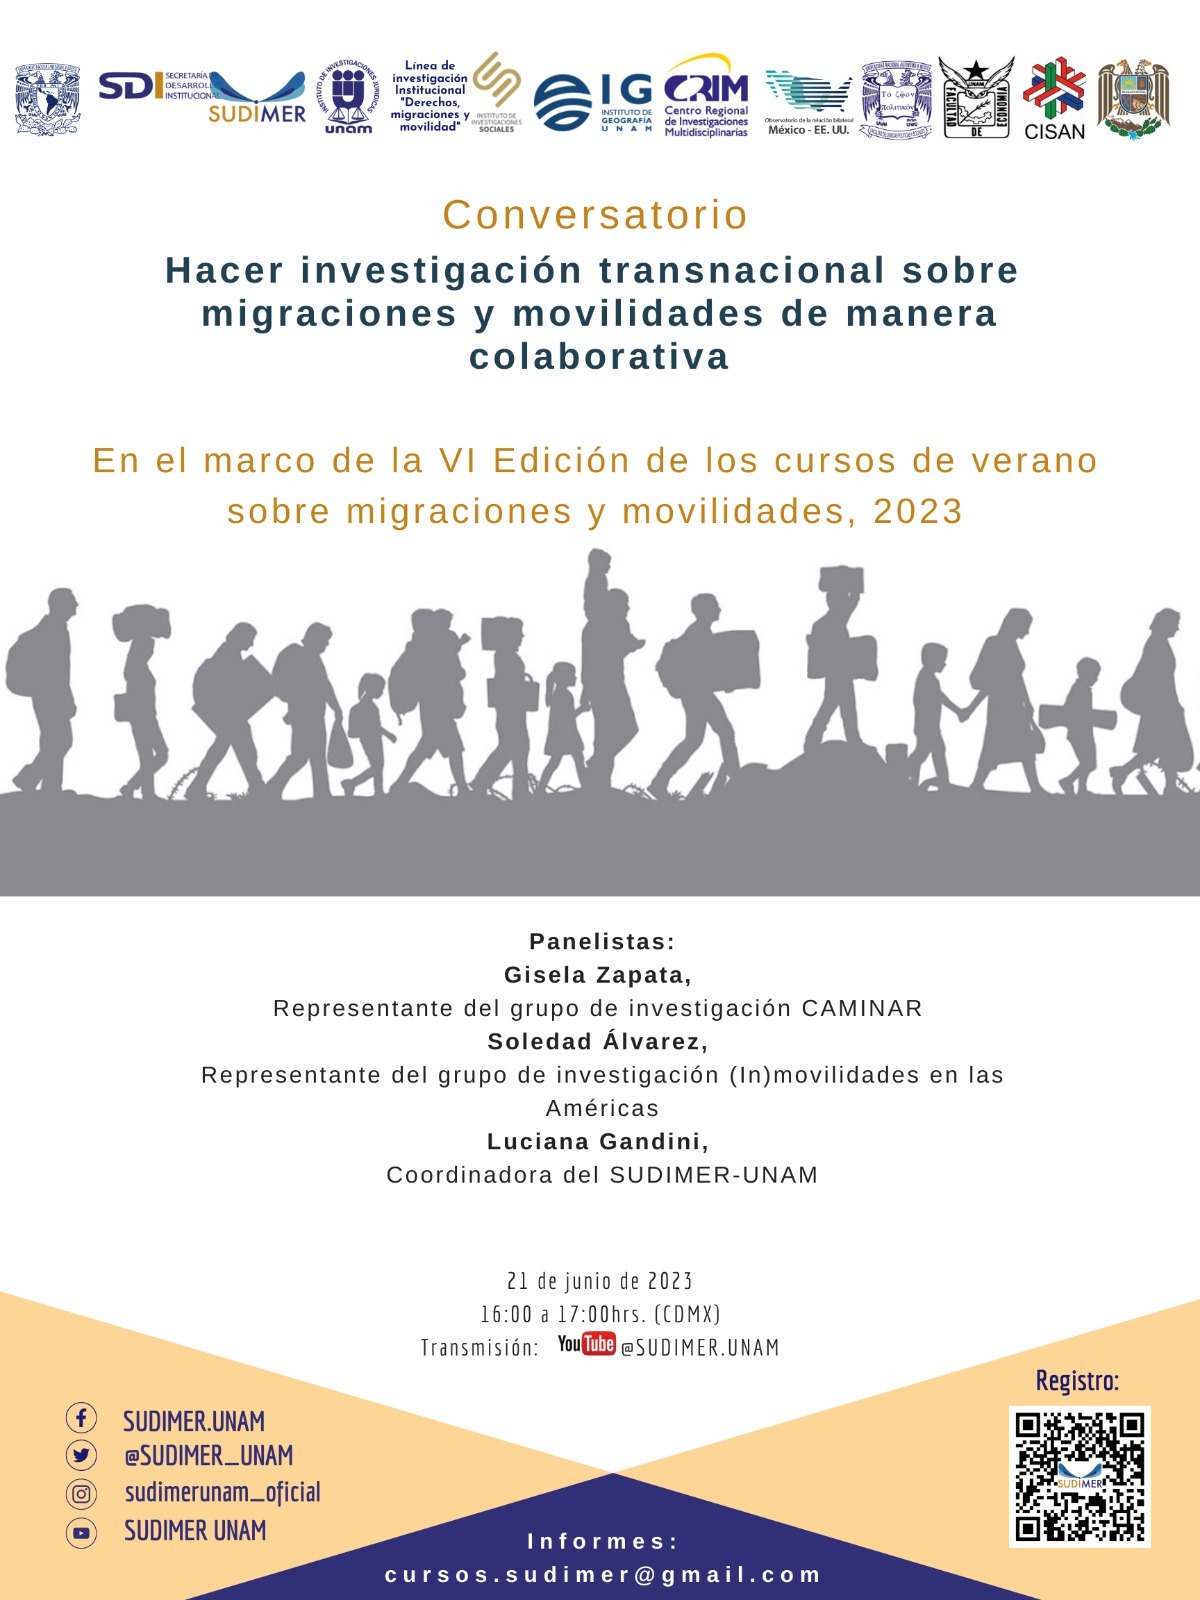 Conversatorio ''Hacer investigación transnacional sobre migraciones y movilidades de manera colaborativa''